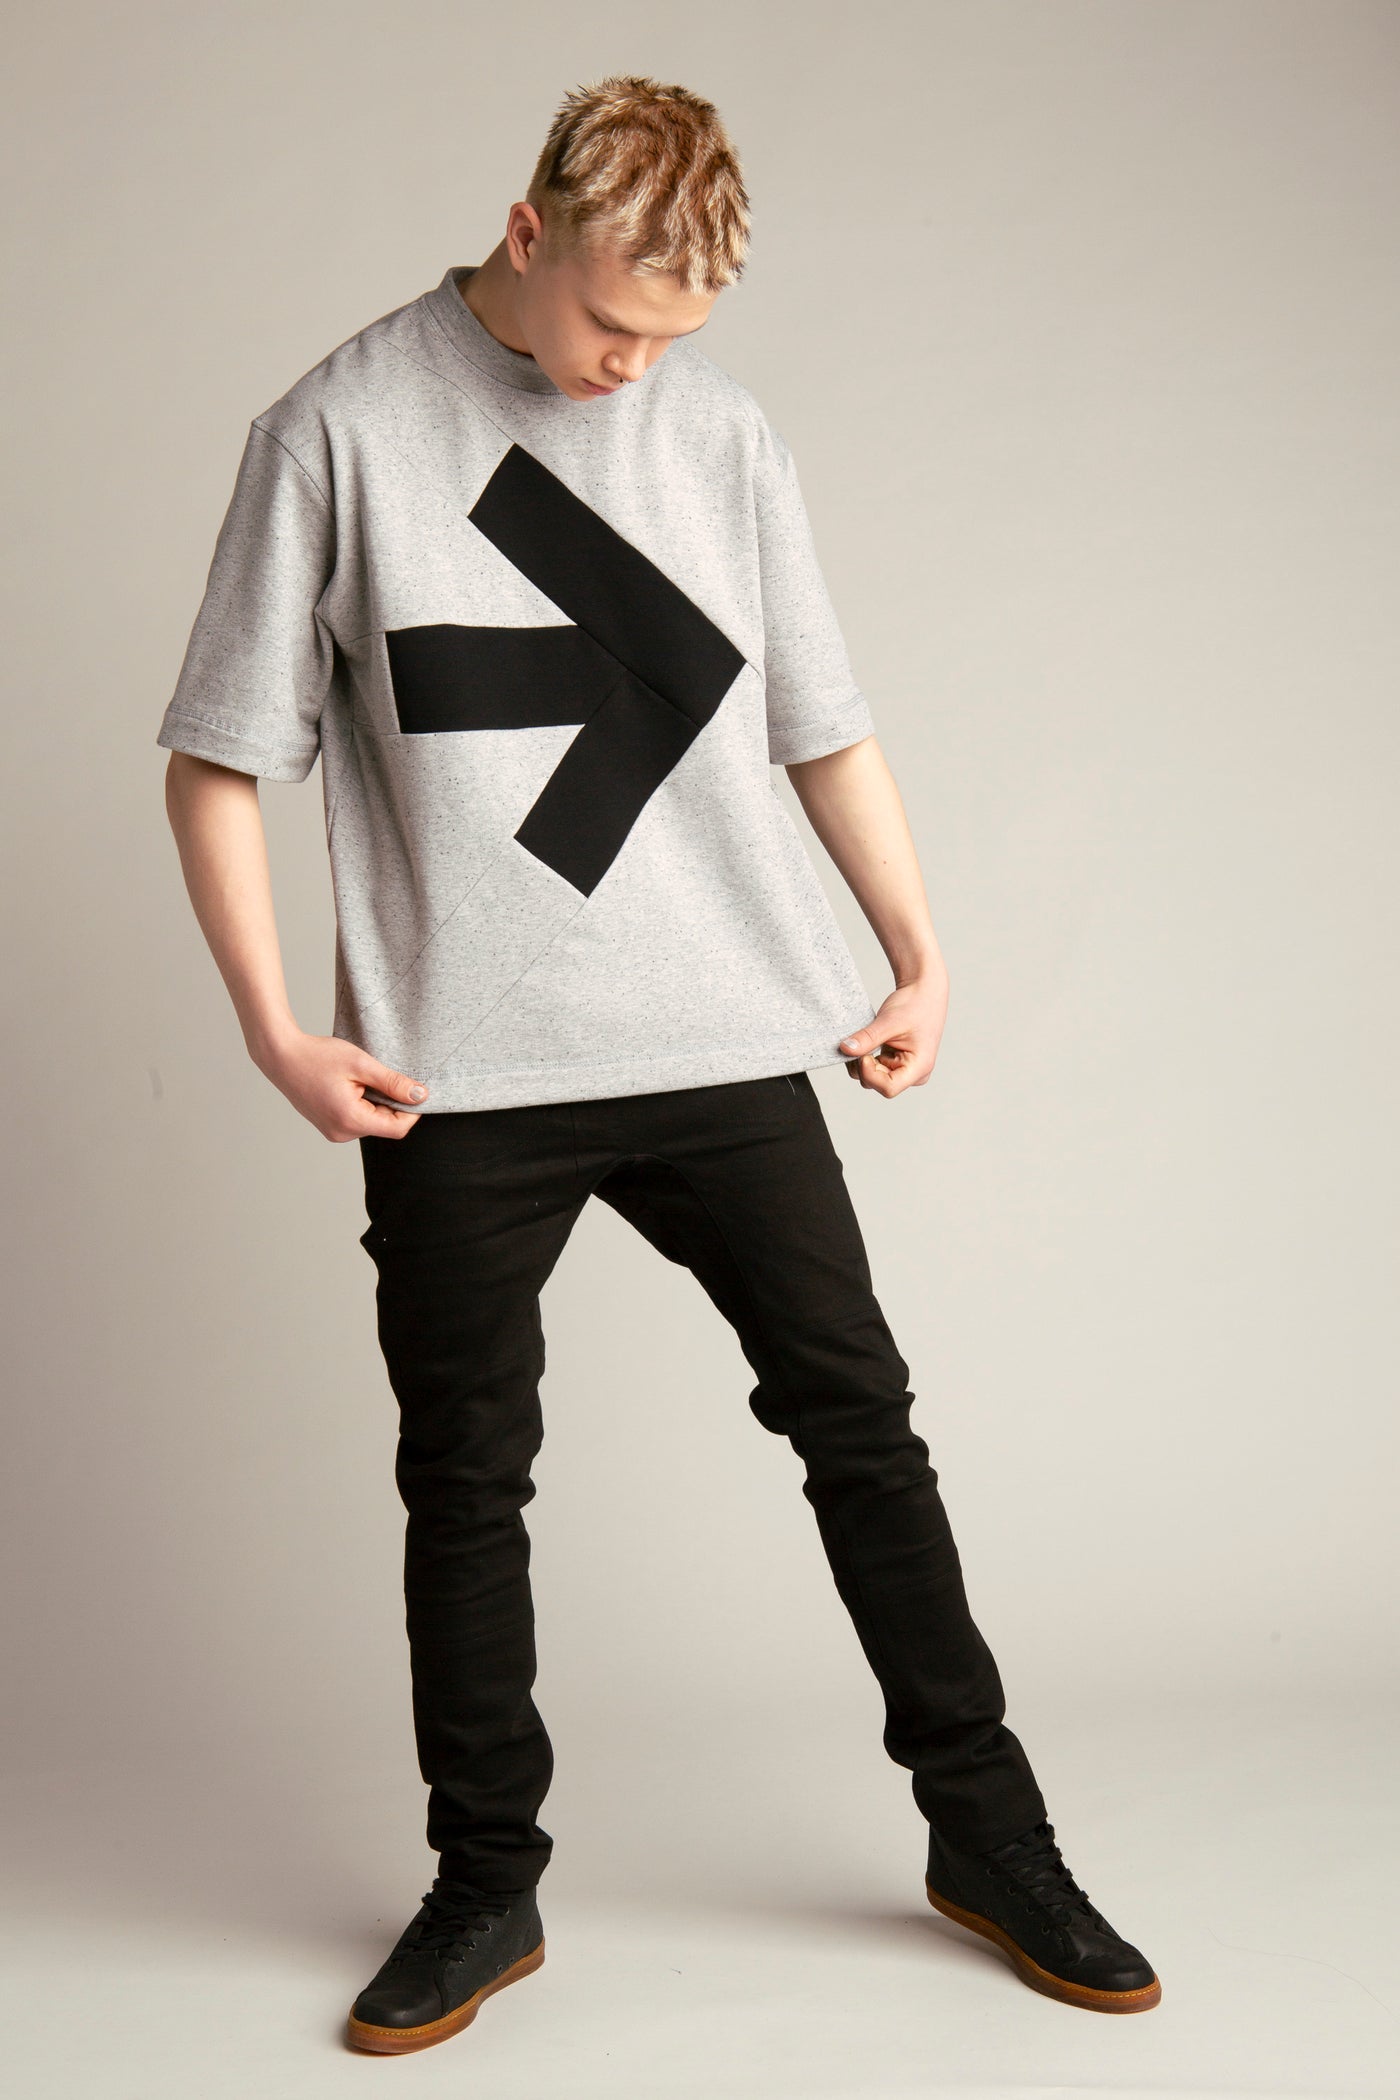 Übergroßes Herren-T-Shirt mit Pfeil | Grau, Schwarz